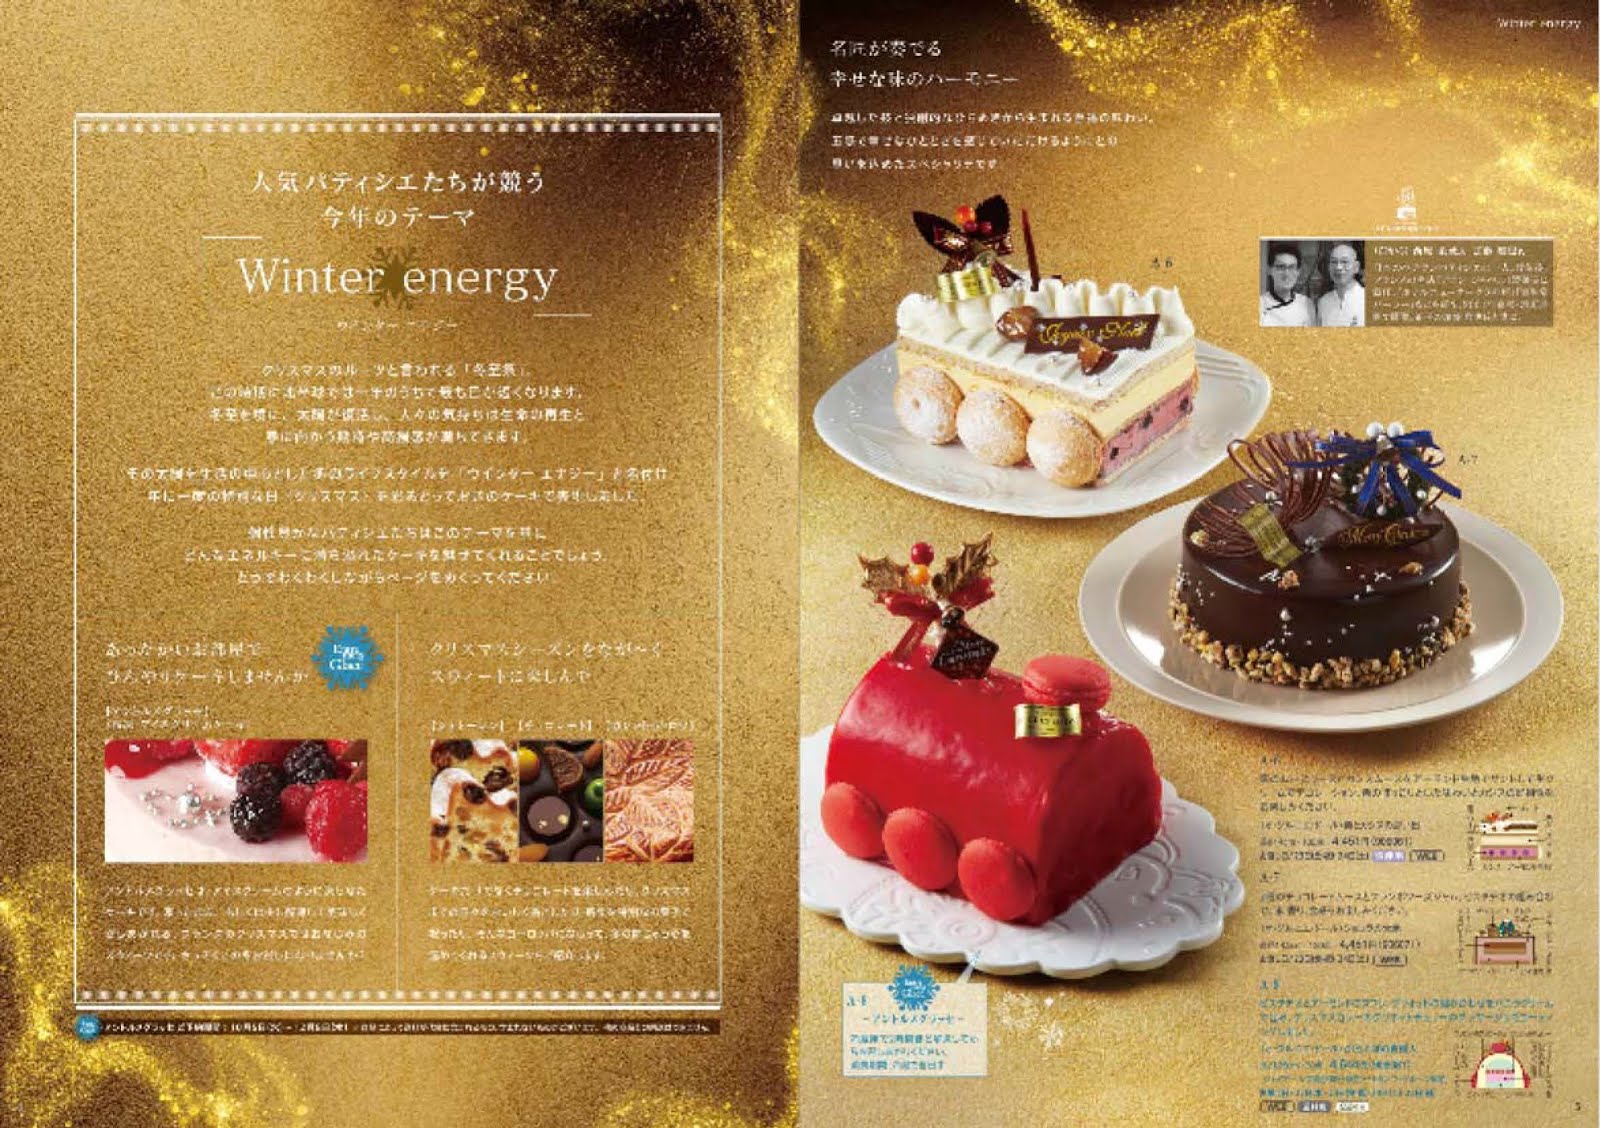 百貨店のクリスマスケーキカタログ 伊勢丹 17 11 19 日々ほぼまいにち気ままな雑感